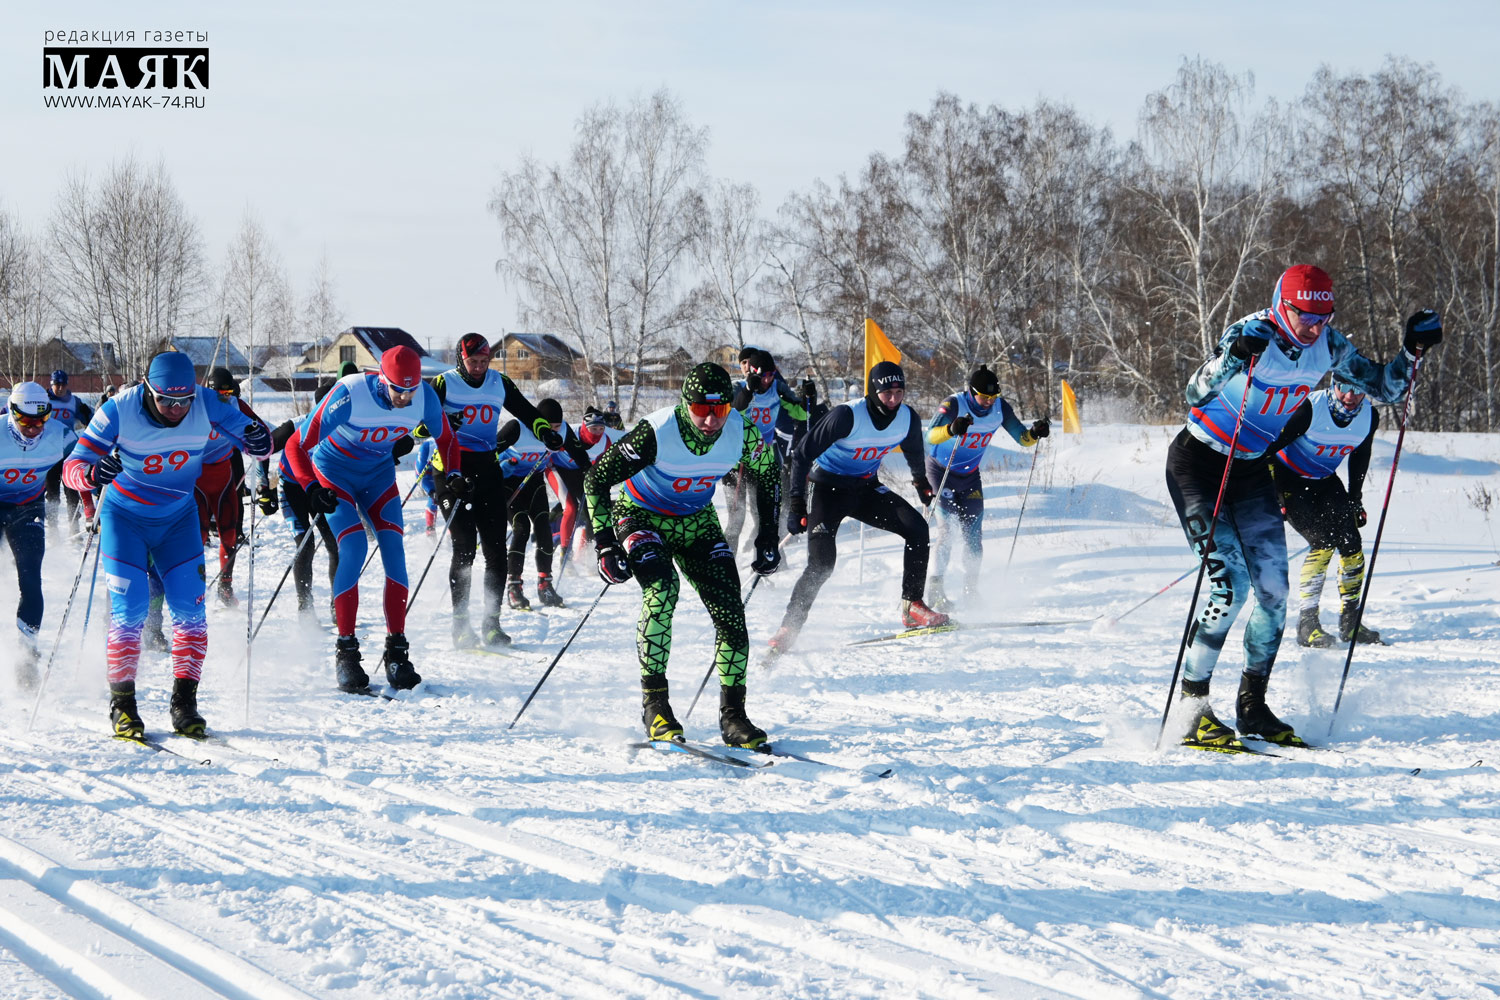 Более 150 лыжников Челябинской области оценили трассу в Красноармейском районе